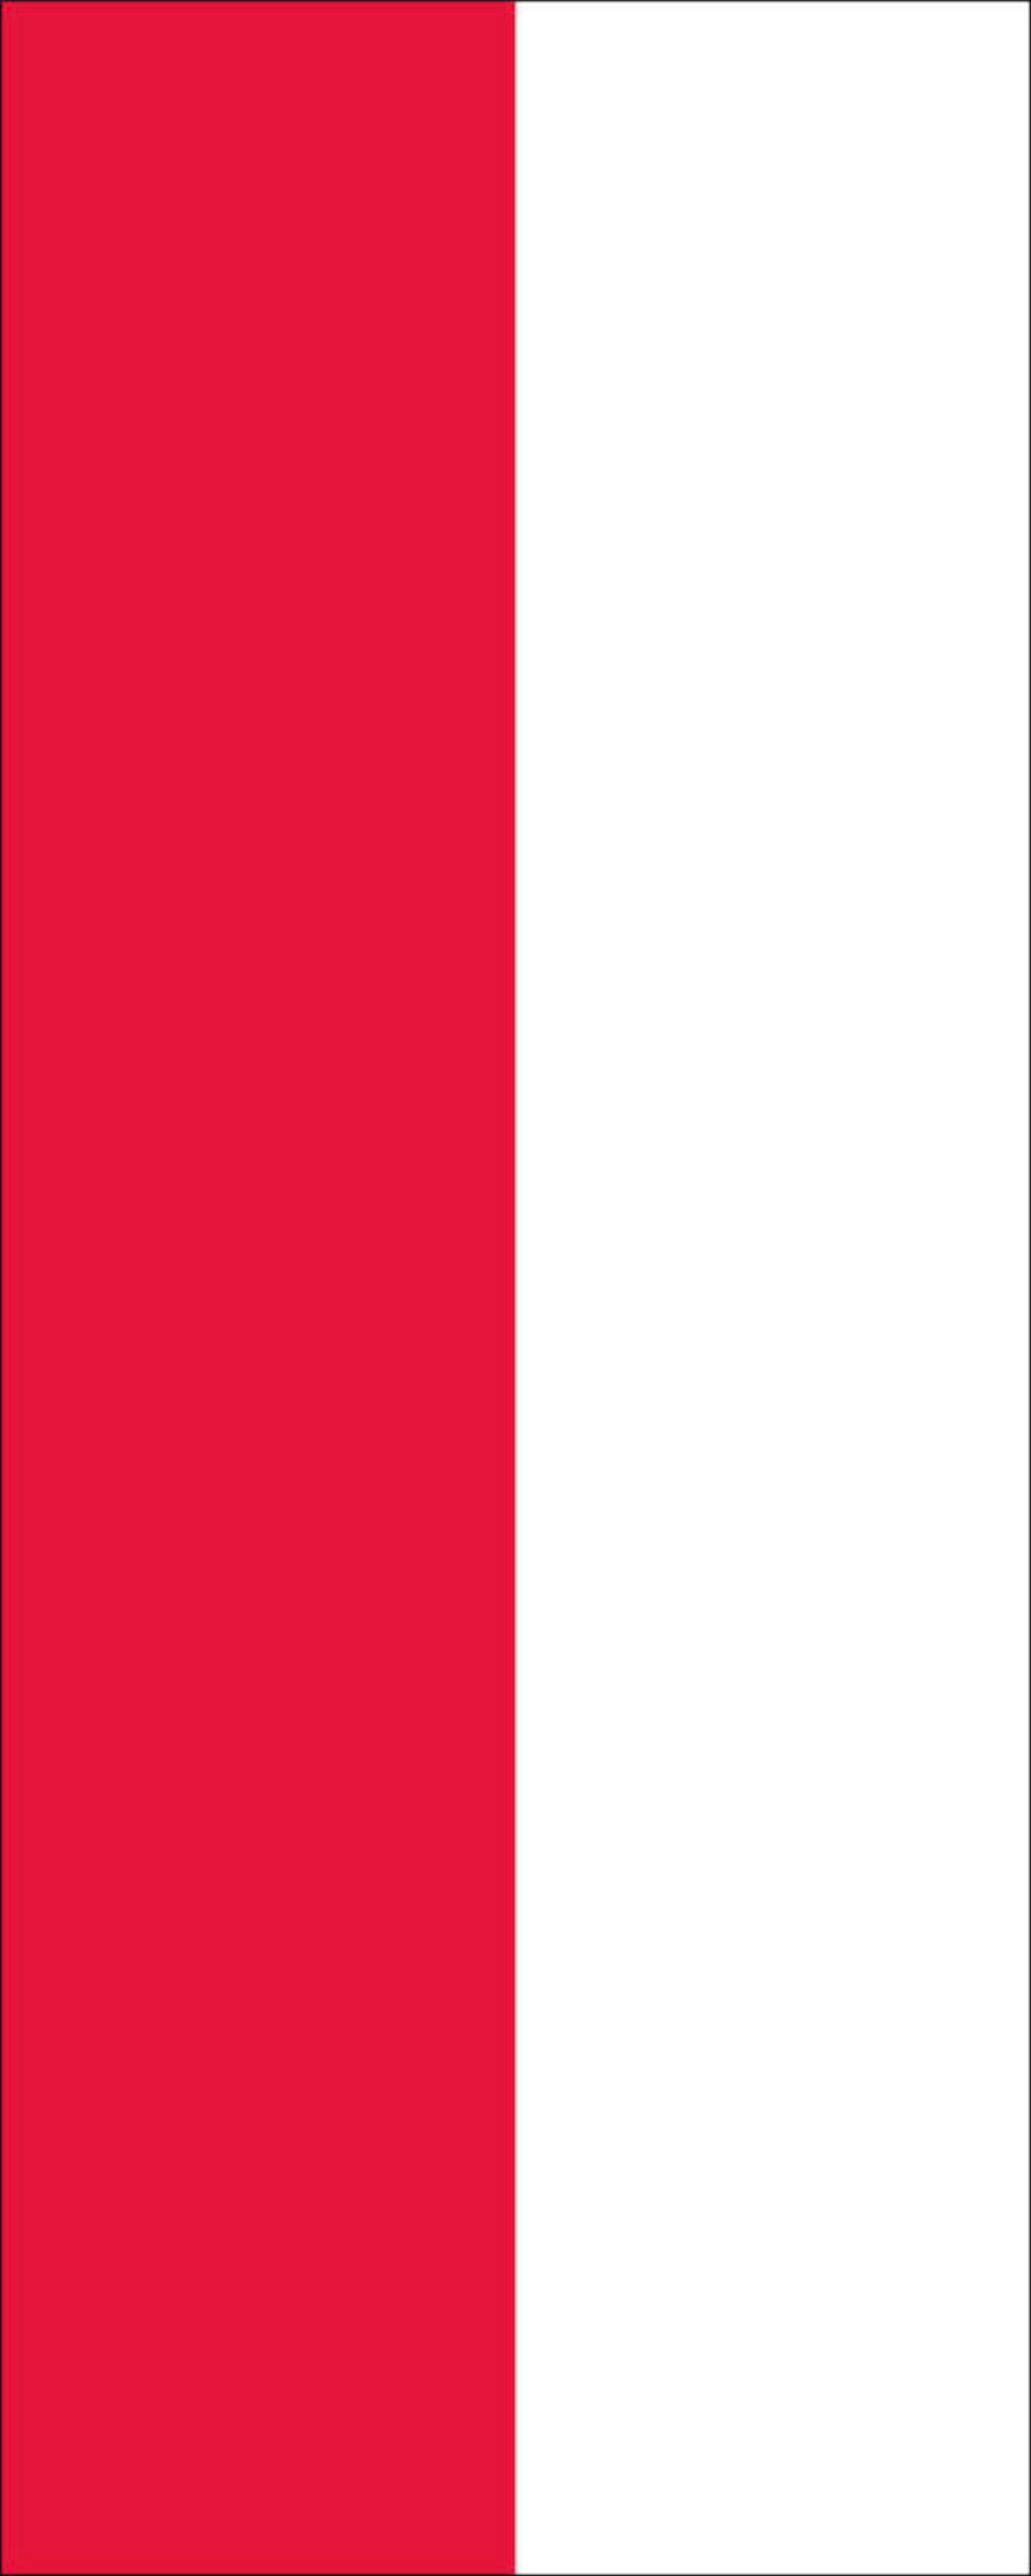 Flagge Hessen